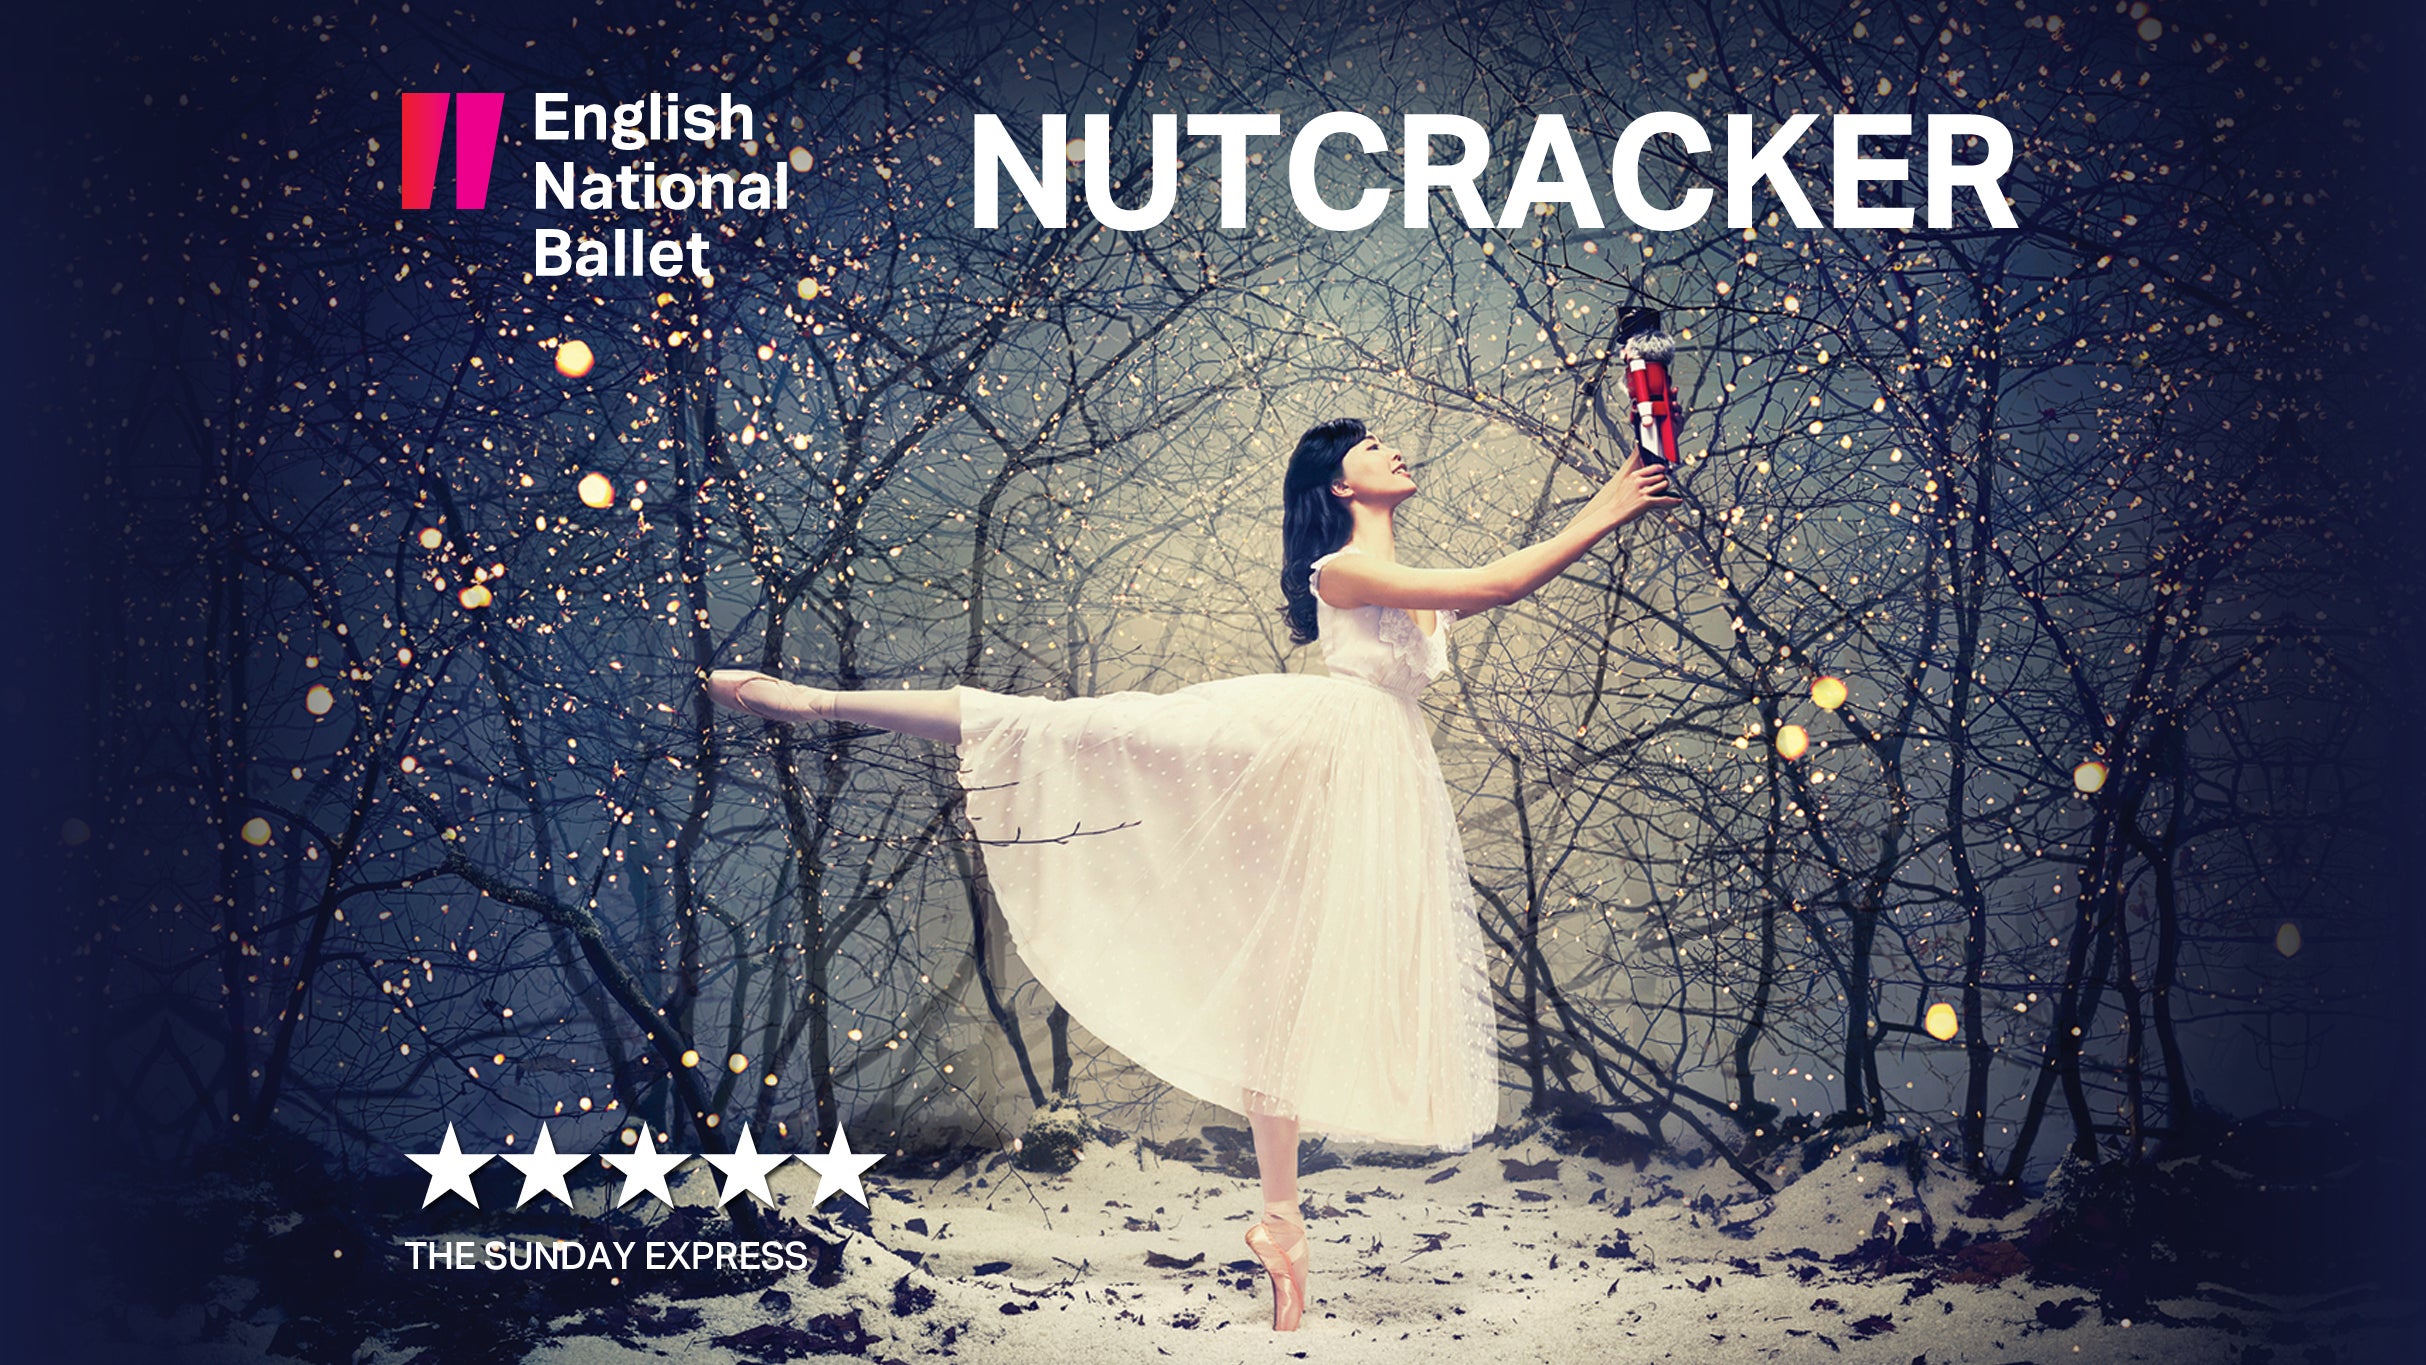 The Nutcracker – English National Ballet